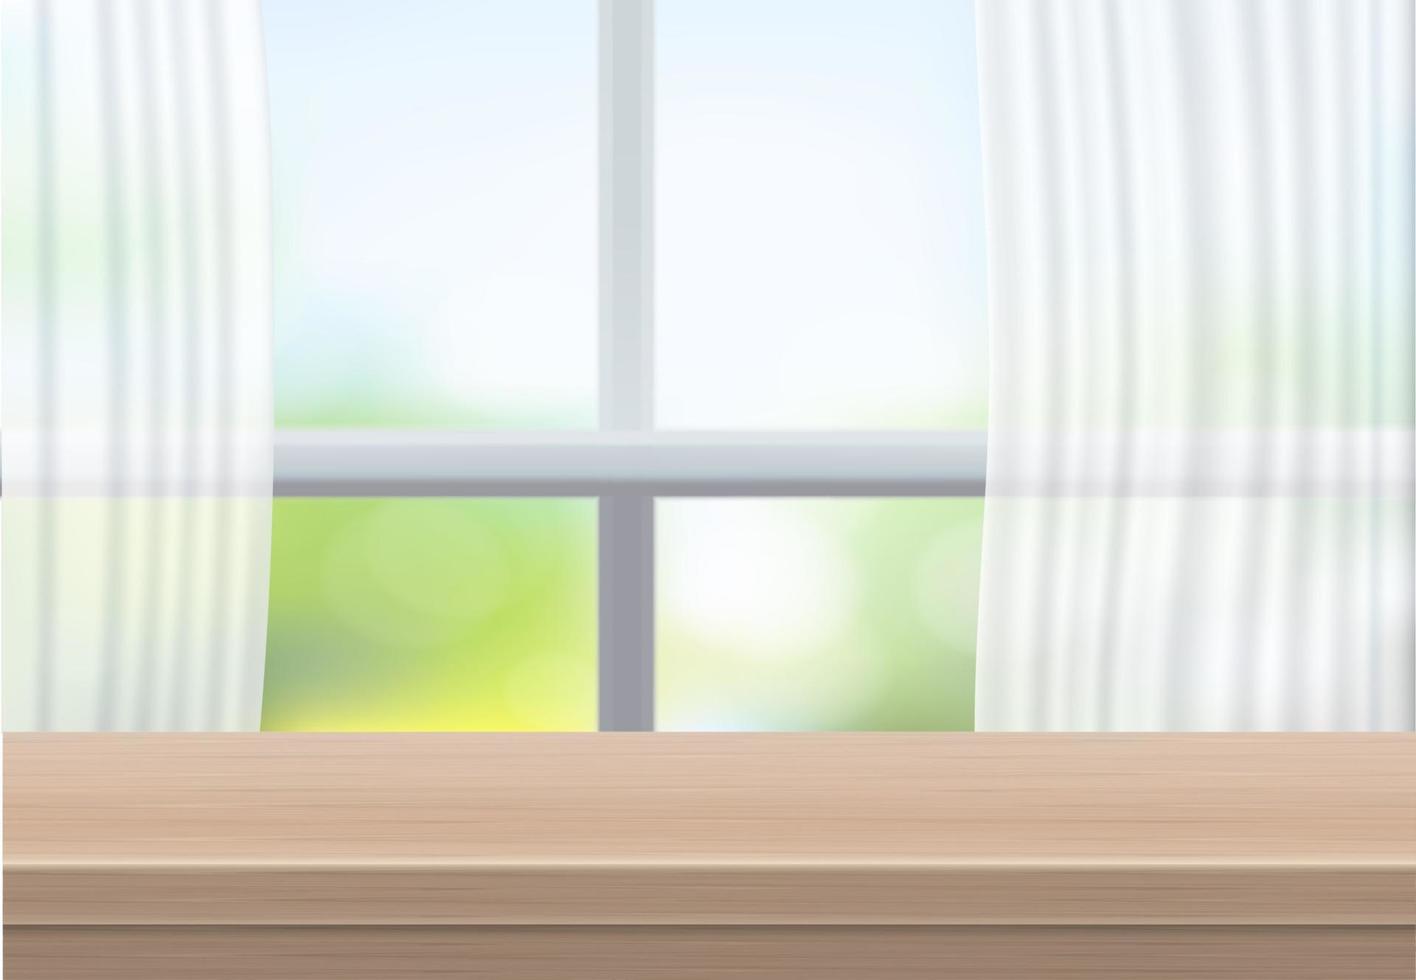 la mesa de madera vacía está frente al vidrio de la ventana y la cortina. para su copia de marca. utilizado para exhibir o montar productos. Concepto blanco de mesa de madera de estilo moderno. ilustración vectorial 3d realista. vector